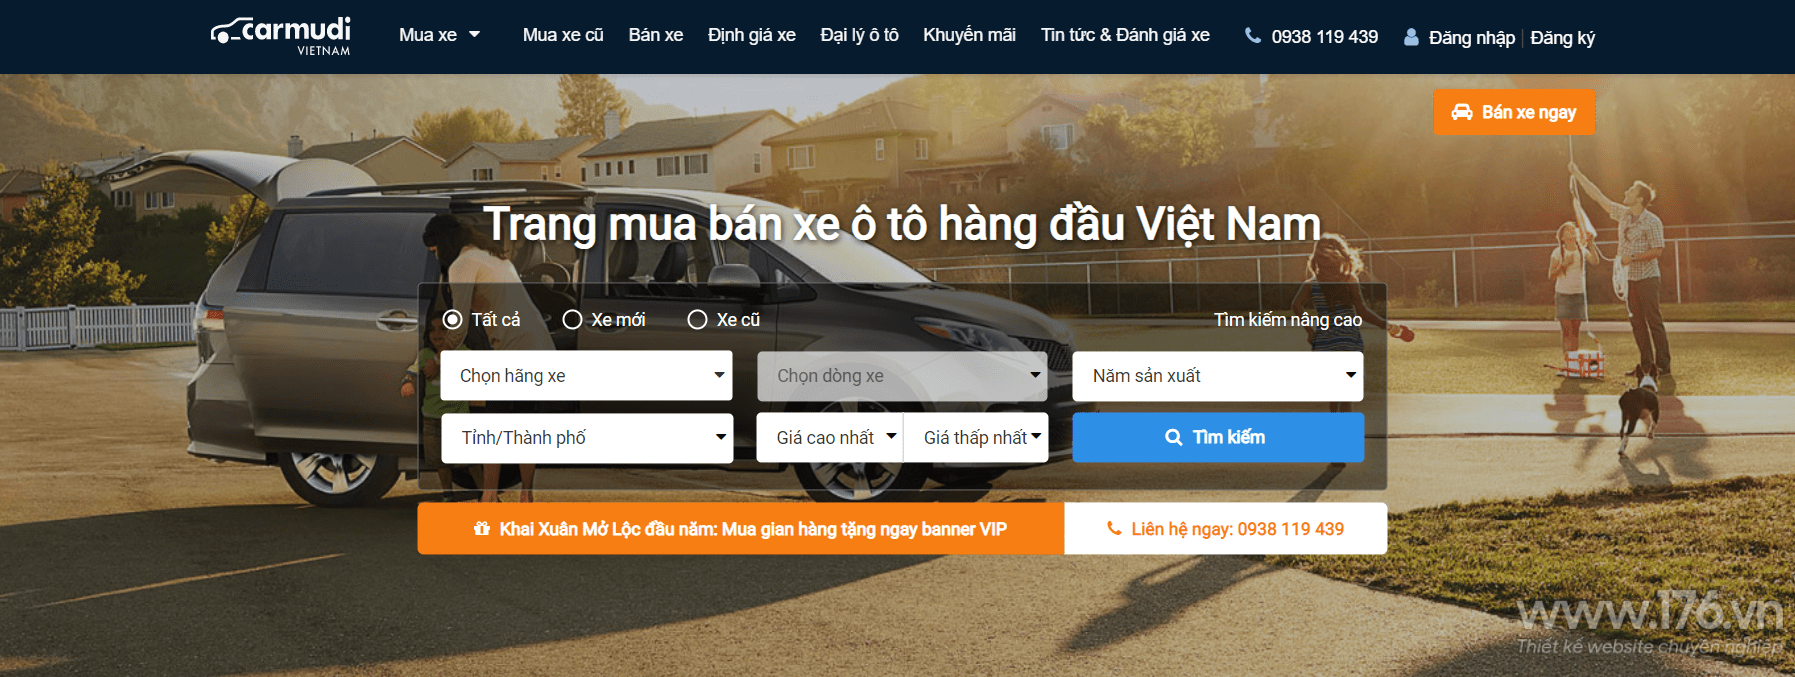 website ban o to quang ngai